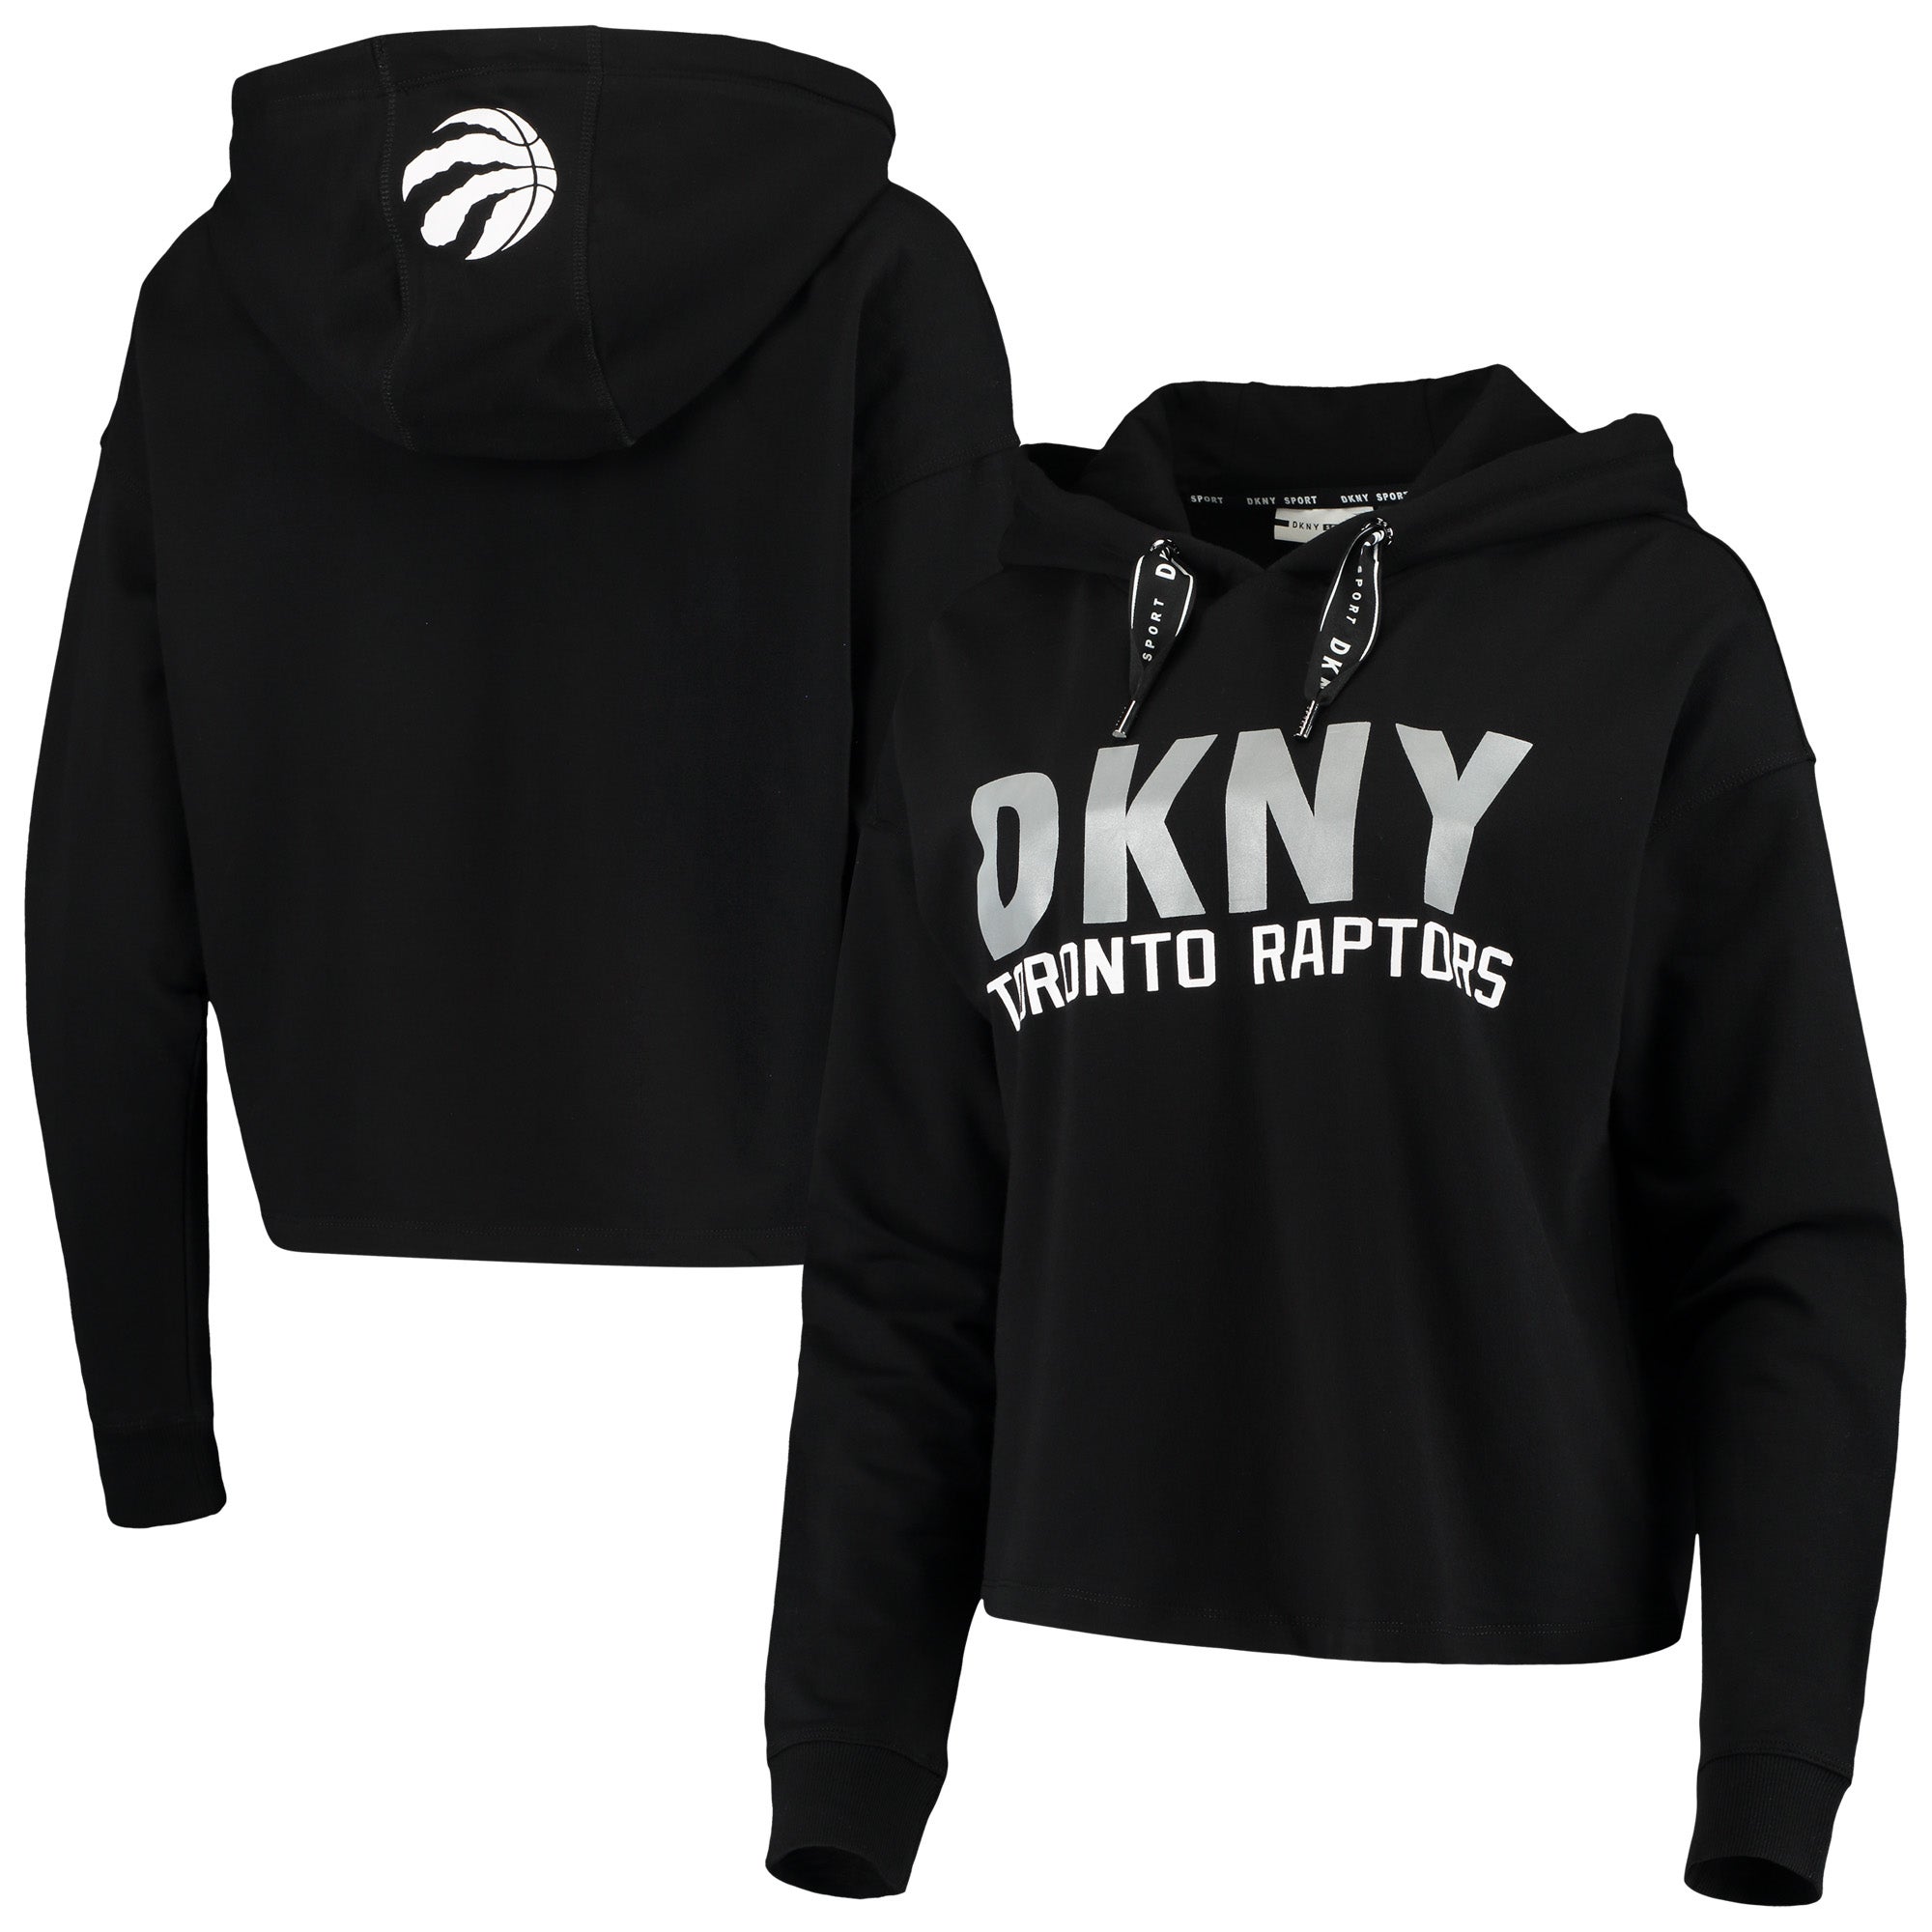 DKNY Sport Raptors Maddie Cropped Hoodie - Women's